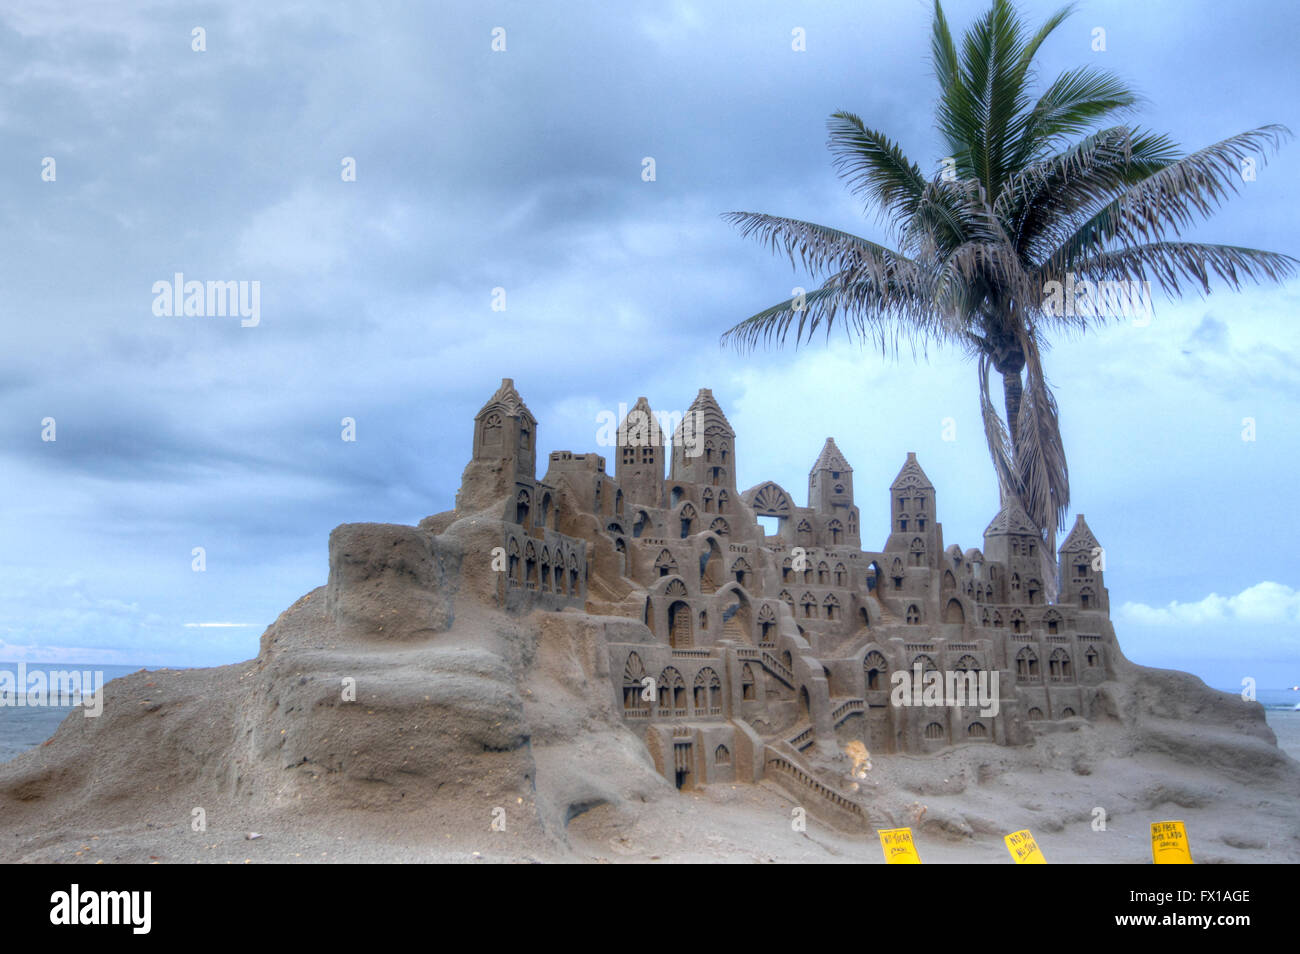 Un château de sable sur la plage de Cartagena, Colombie Banque D'Images